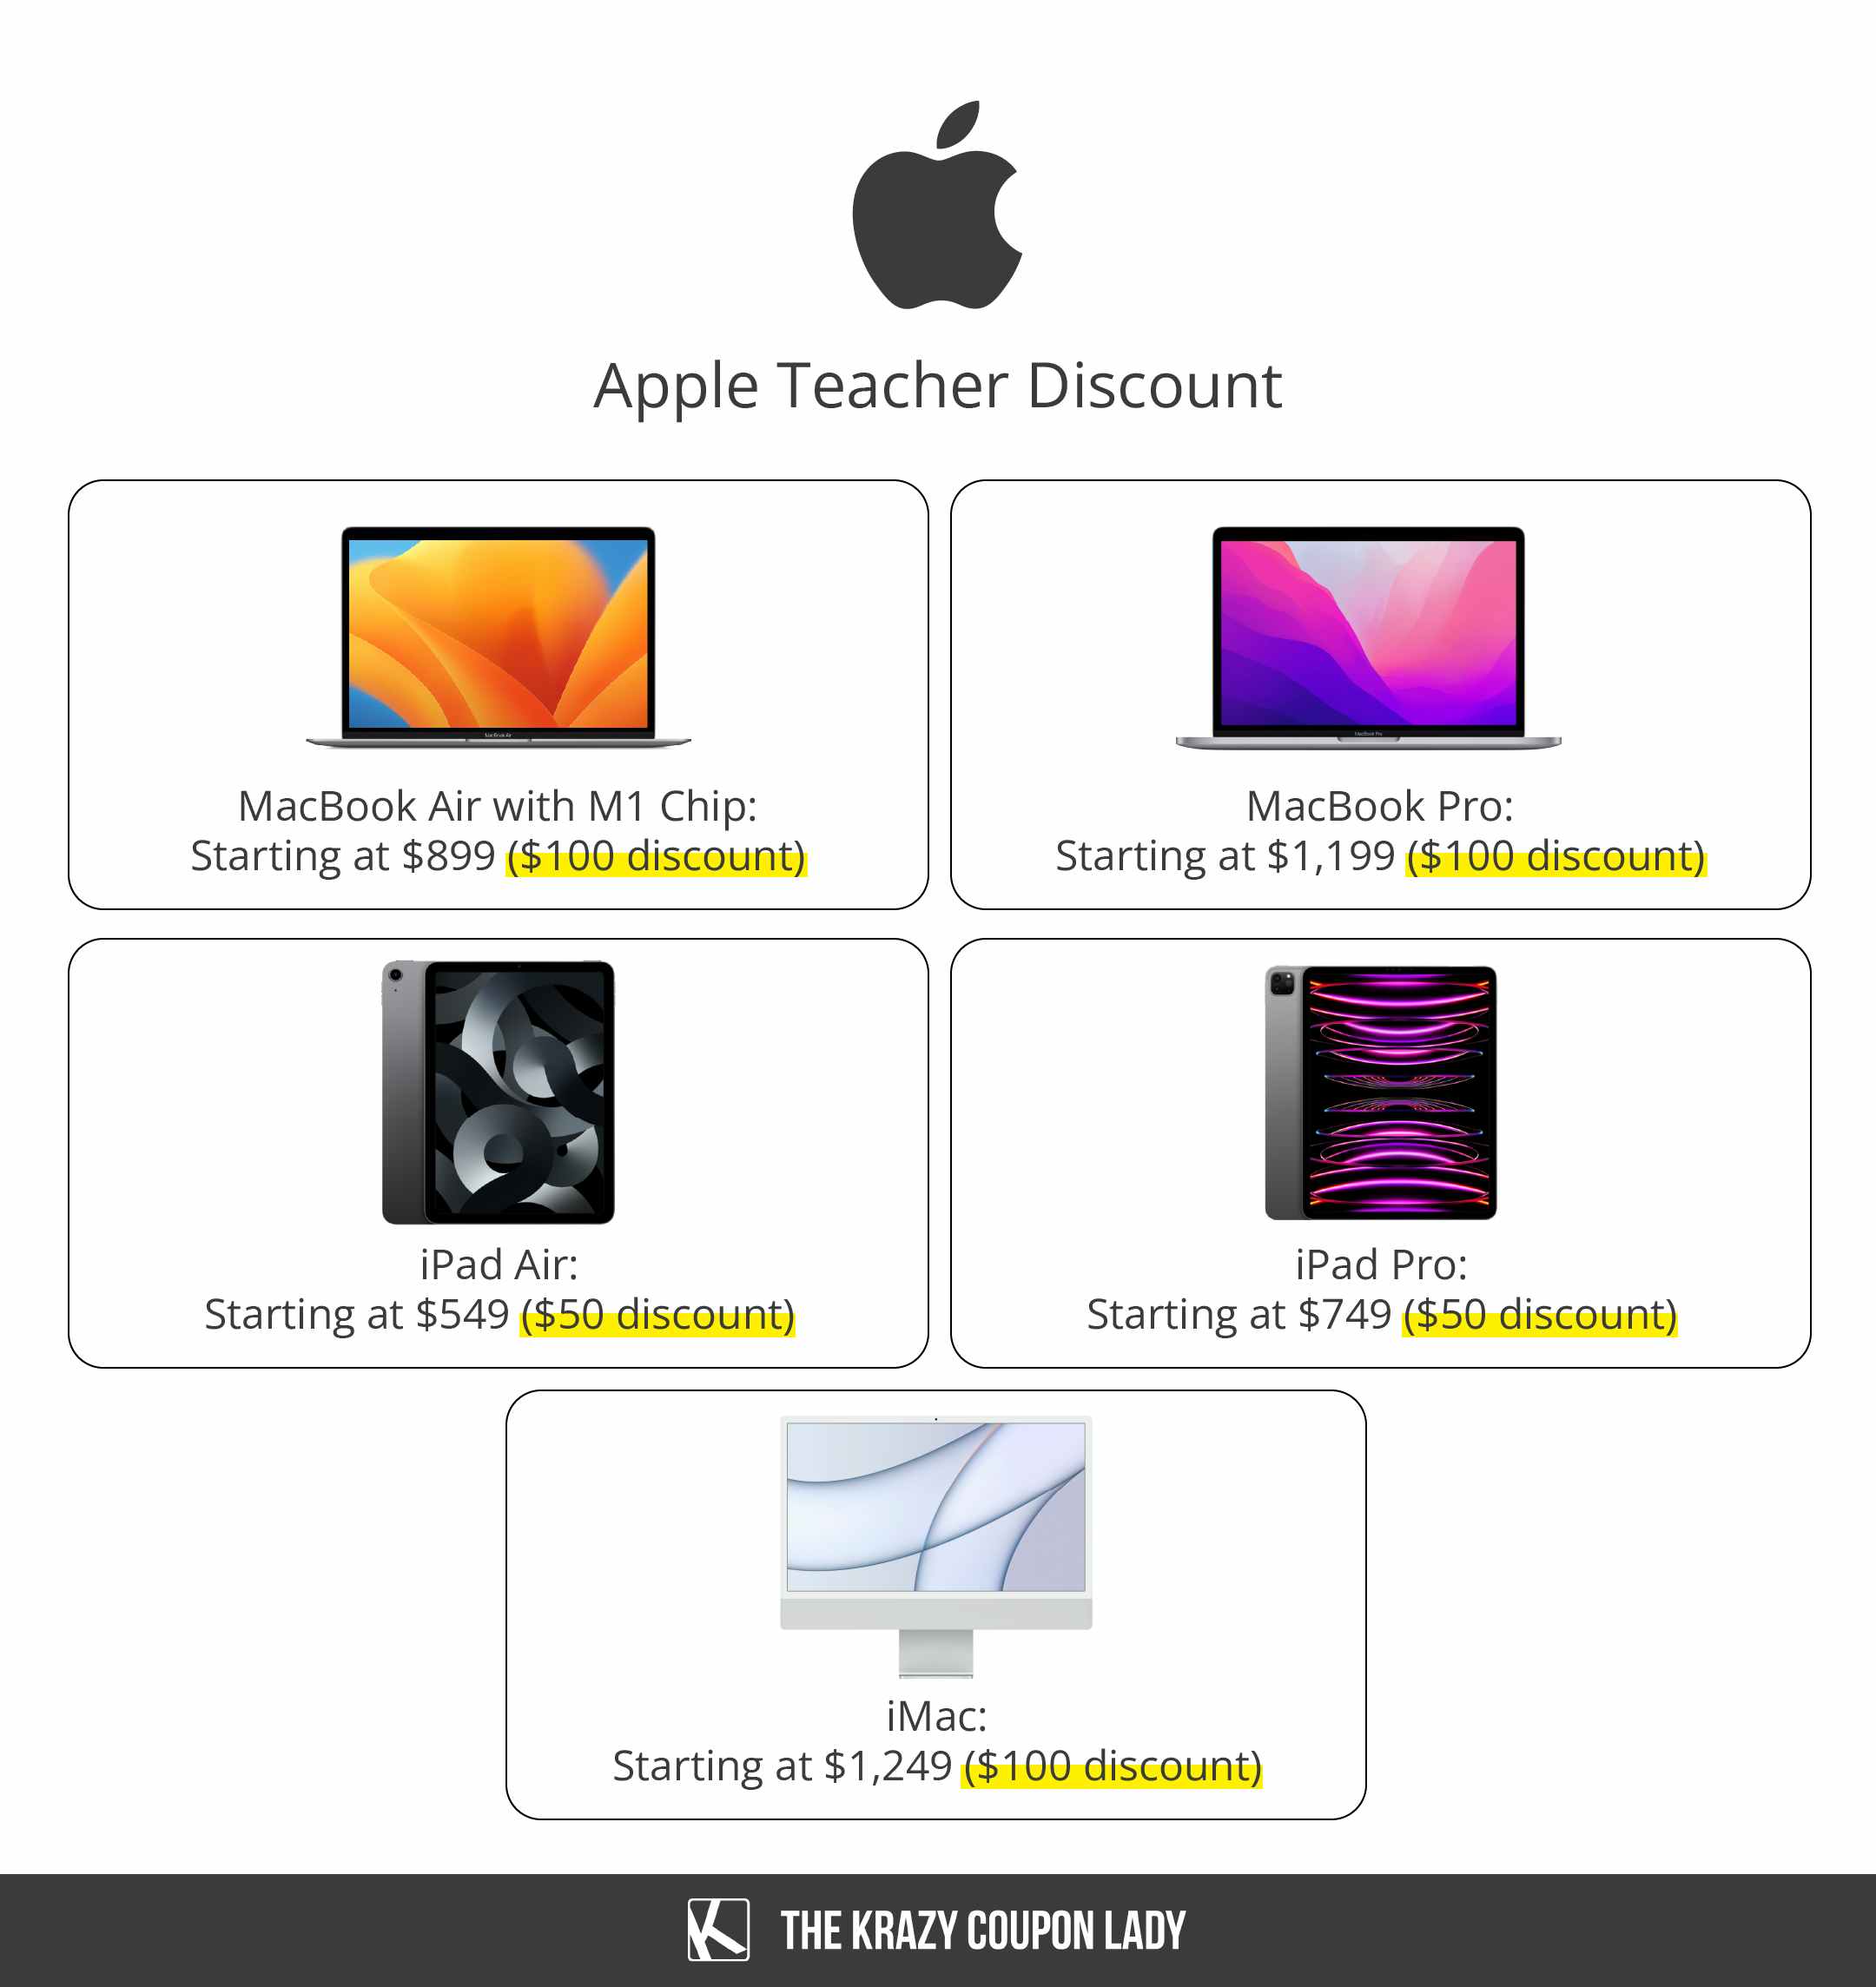 Teacher Discount